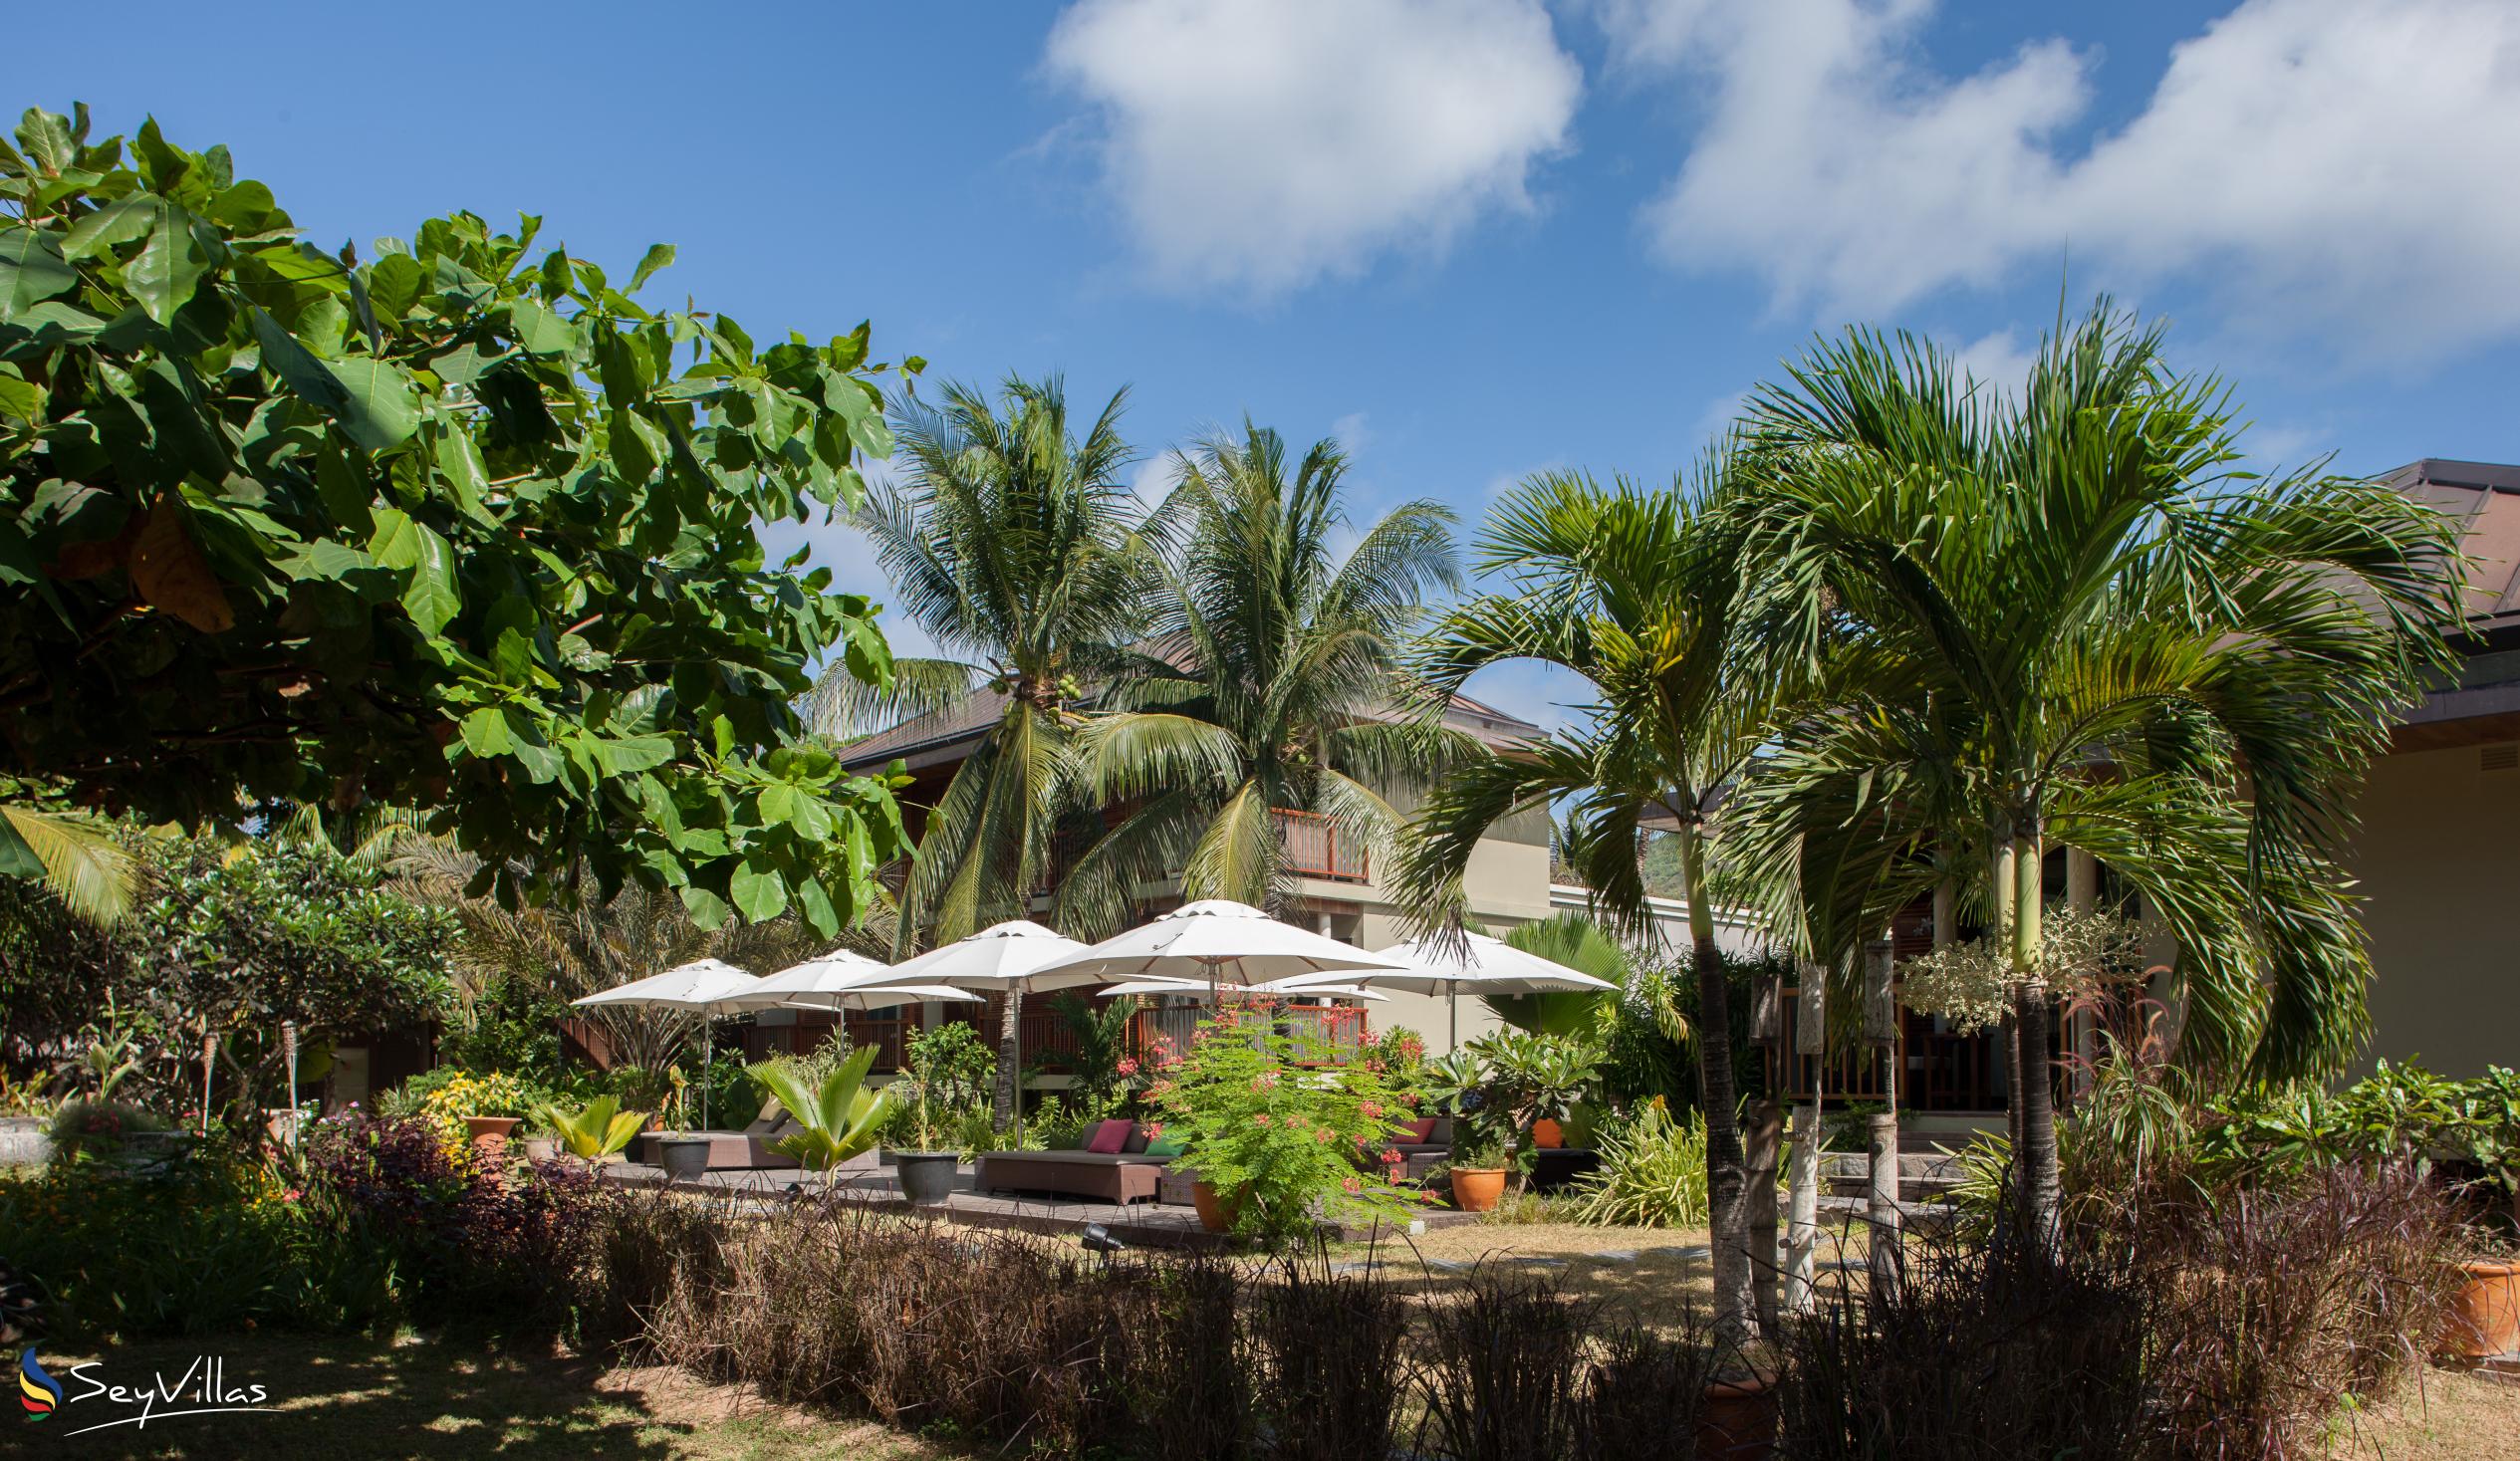 Foto 19: Dhevatara Beach Hotel - Aussenbereich - Praslin (Seychellen)